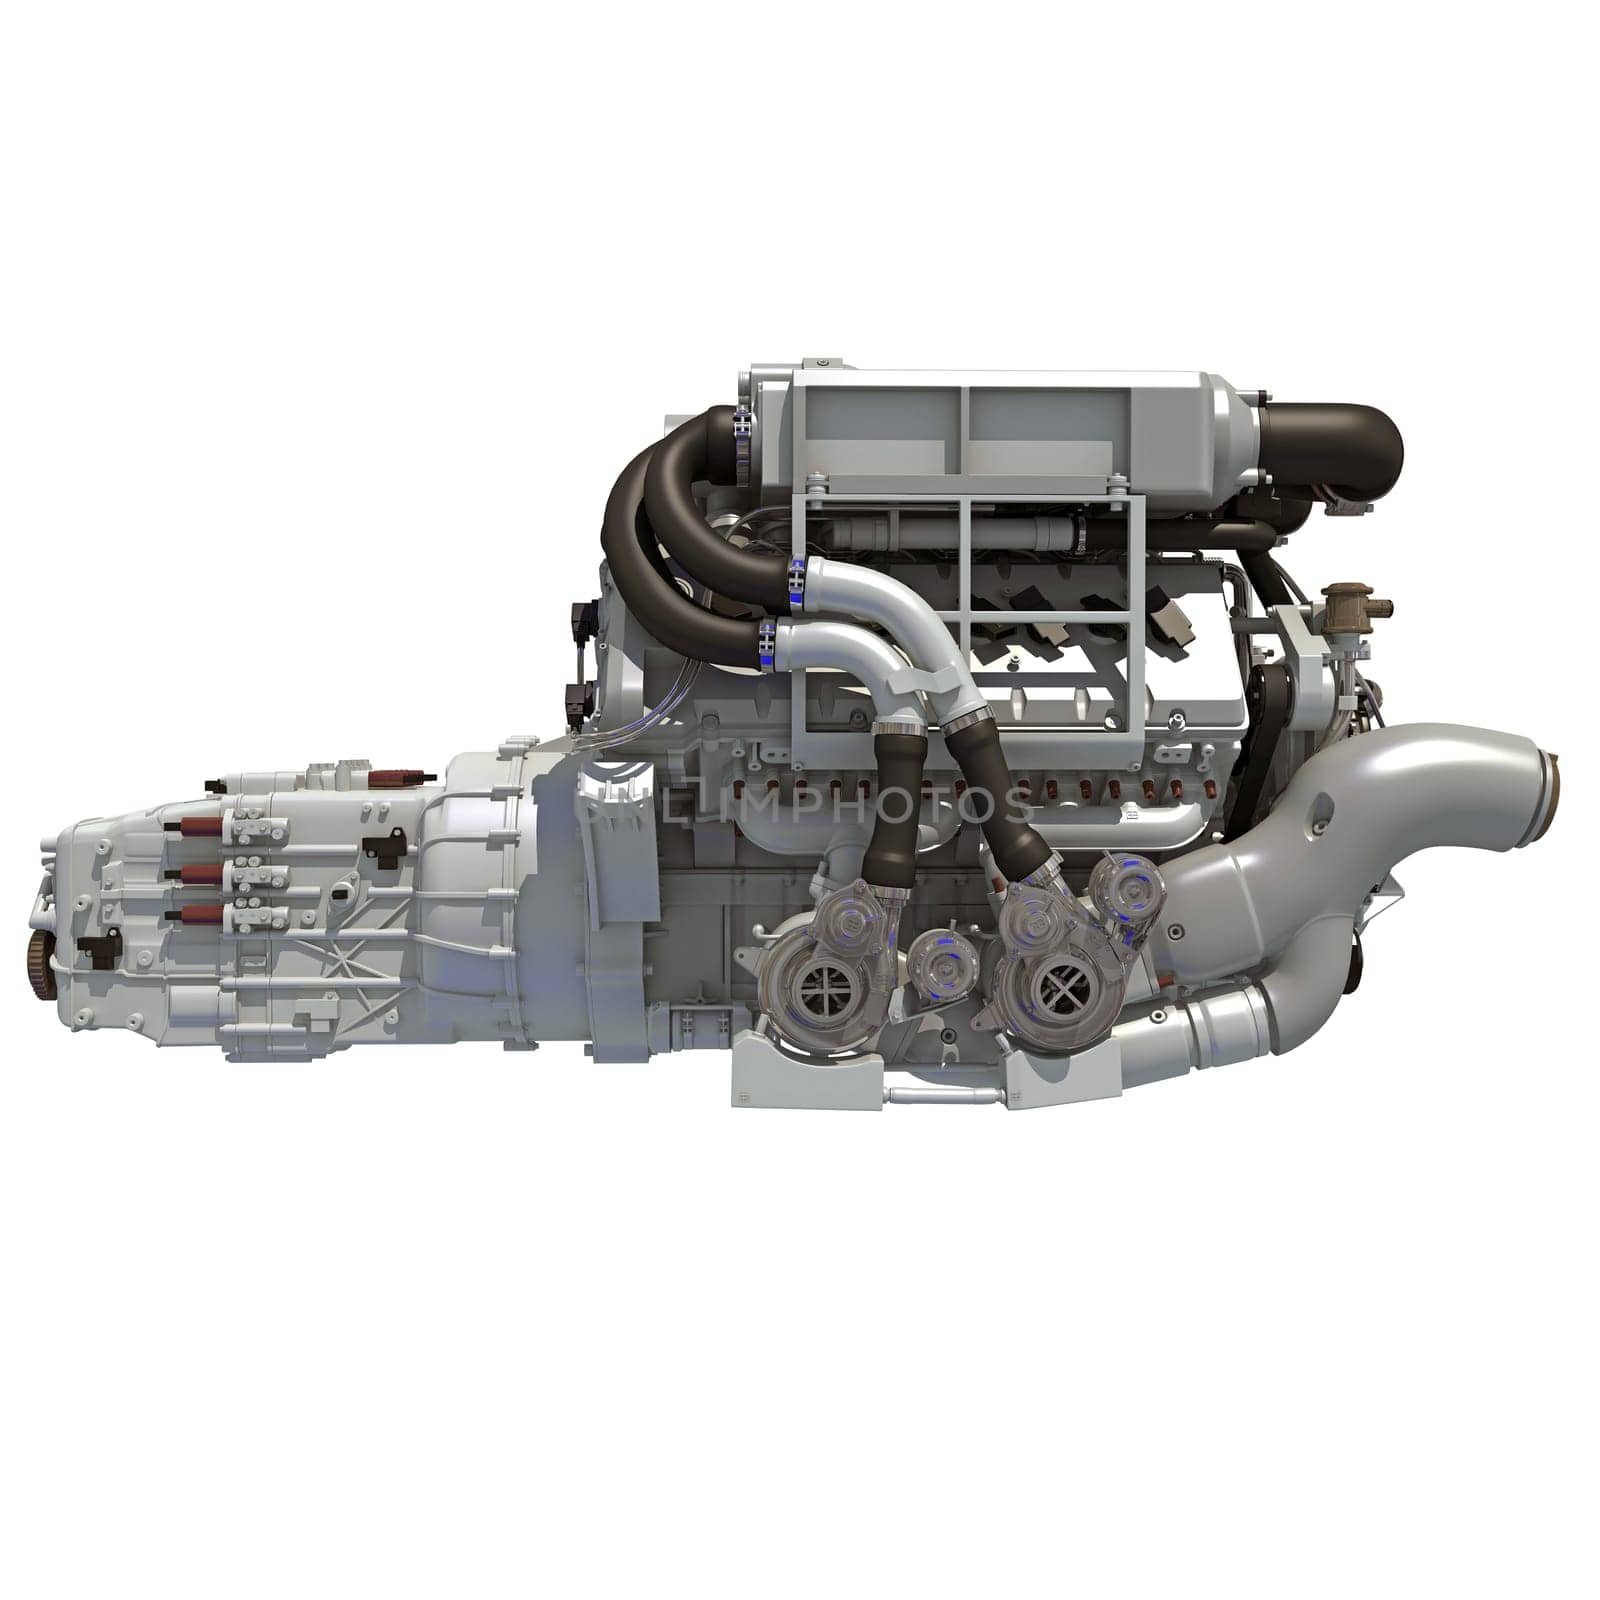 V16 Engine 3D rendering model on white background